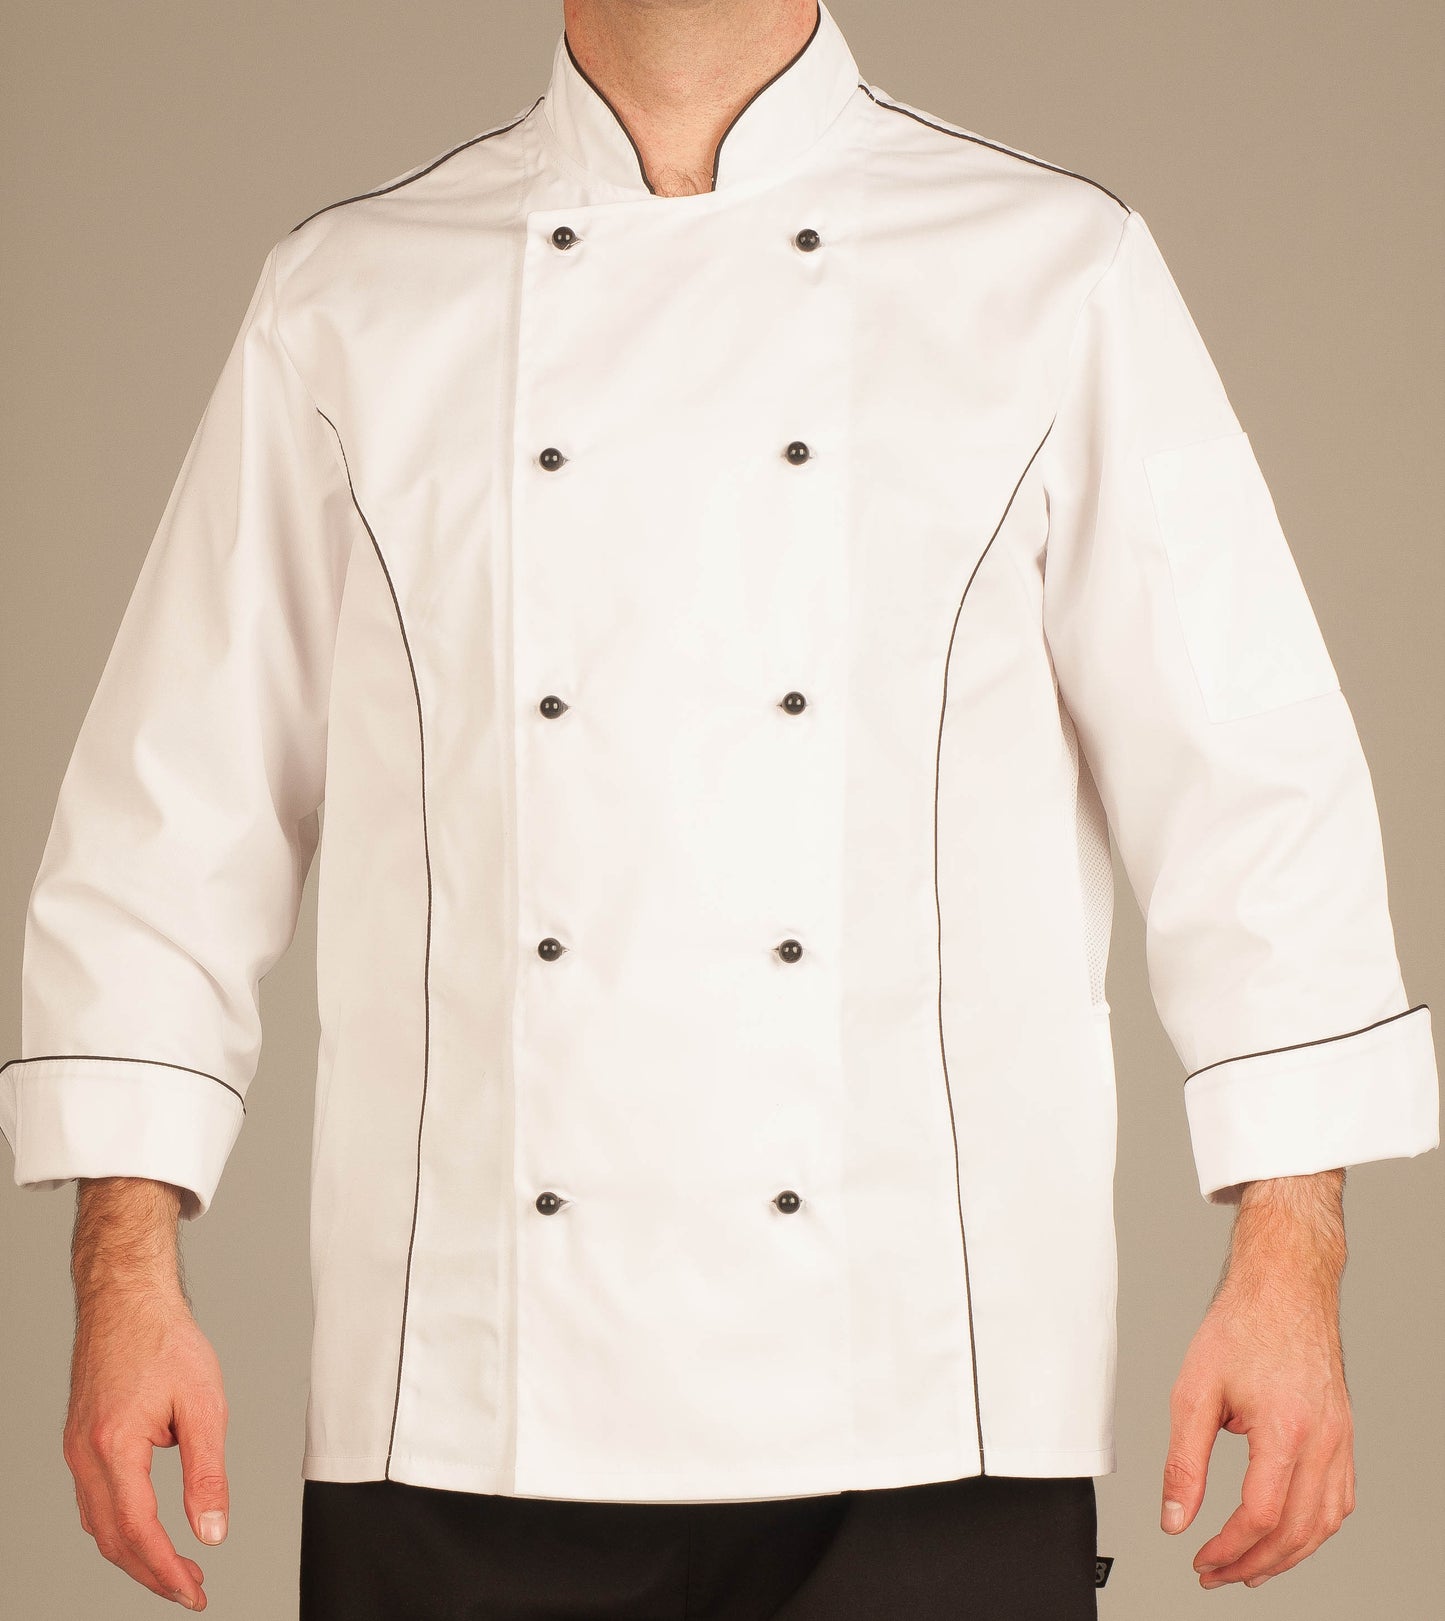 Jacob Chef Jacket 3/4 Sleeves